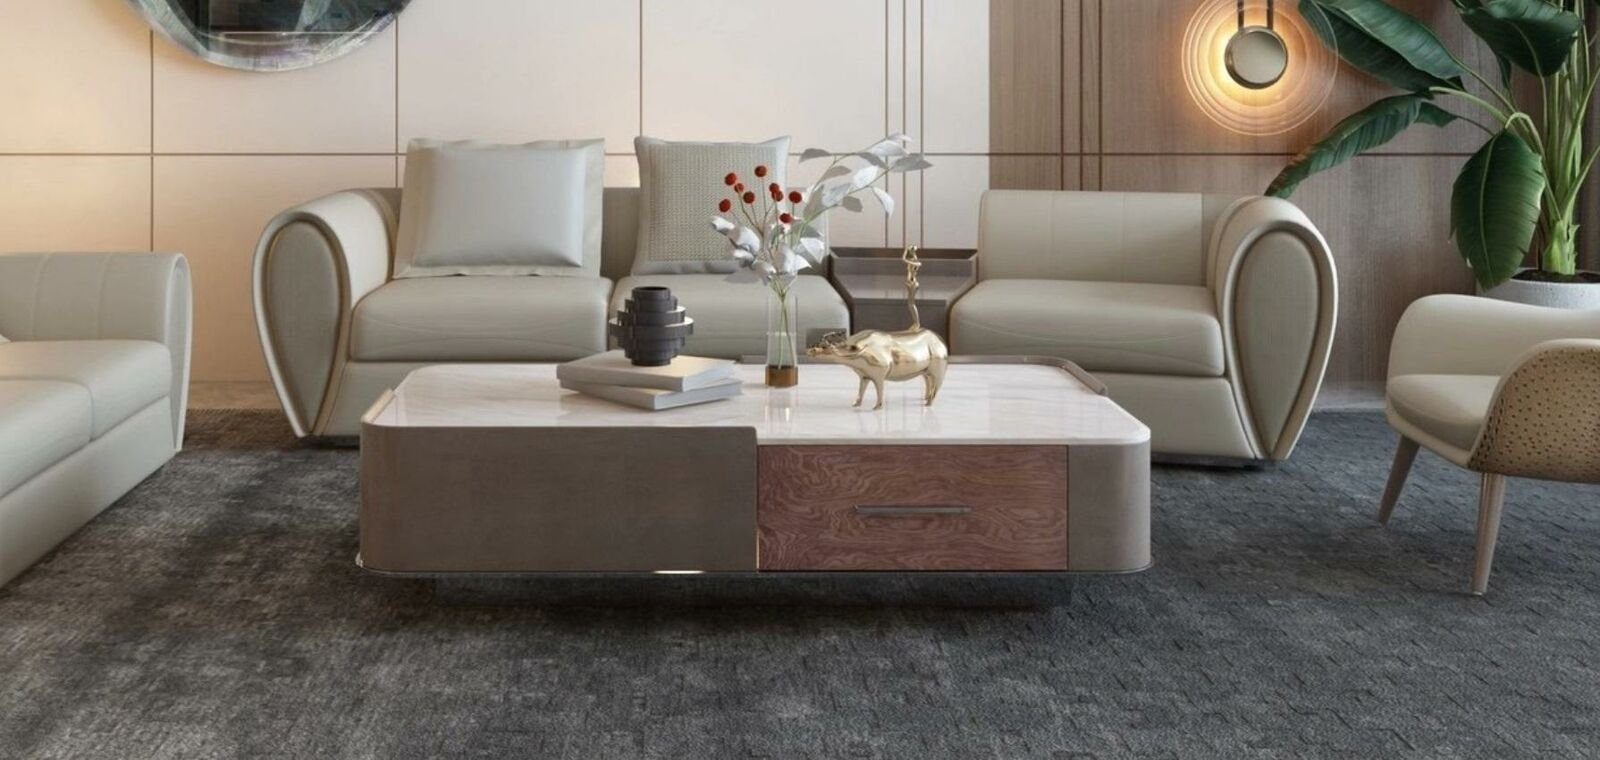 JVmoebel Couchtisch Wohnzimmer Couchtisch Beistelltisch Design Couchtische Sofa Tische